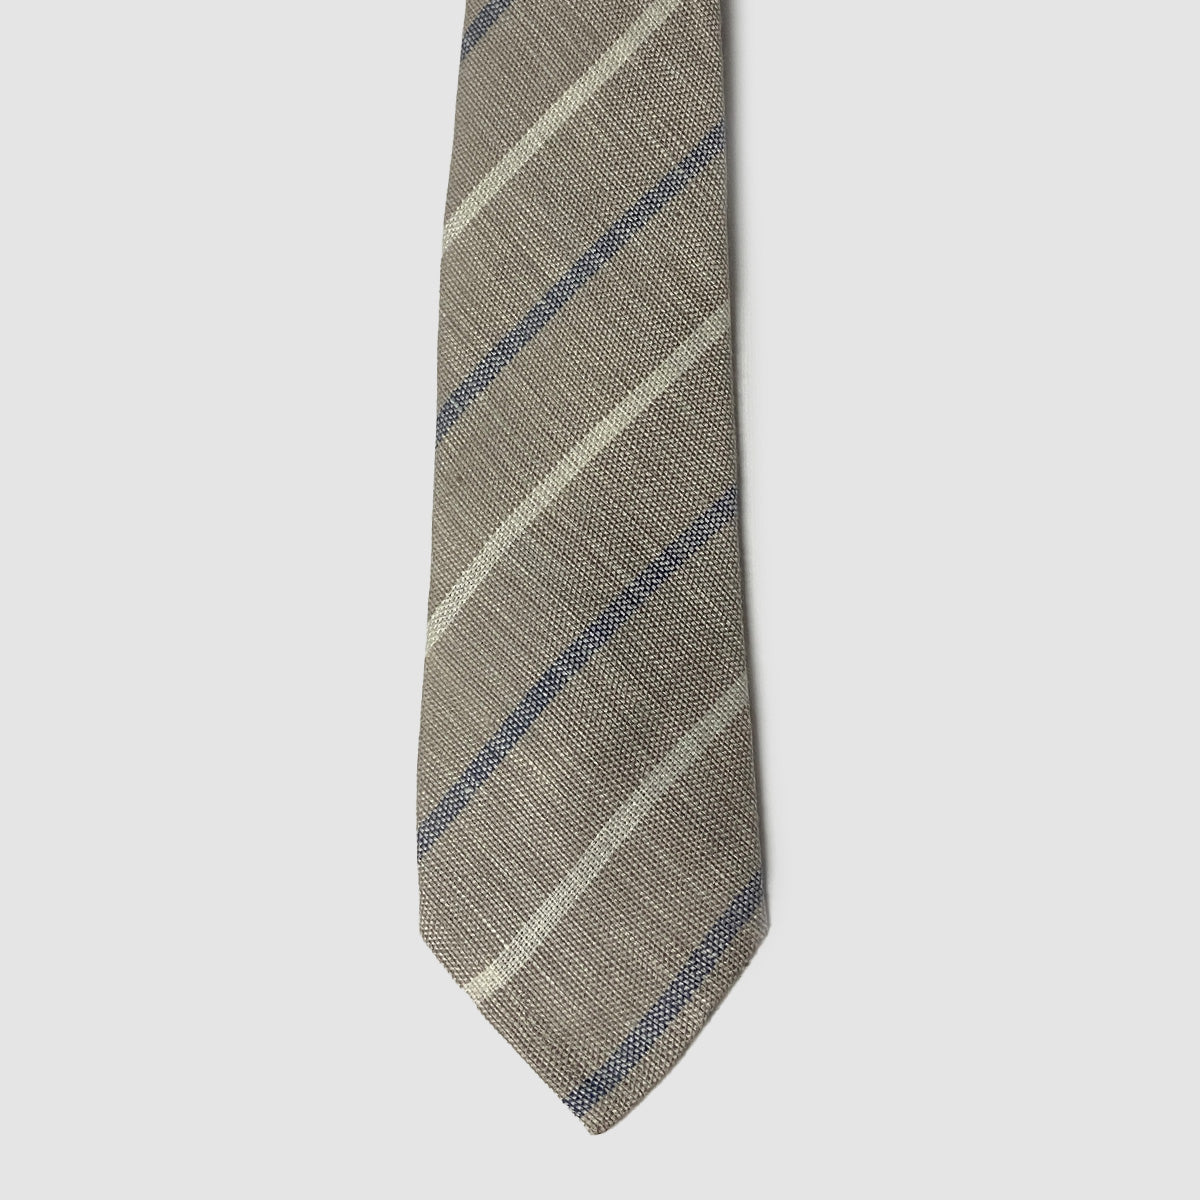 Beige Striped 100% Linen Hand Rolled Tie